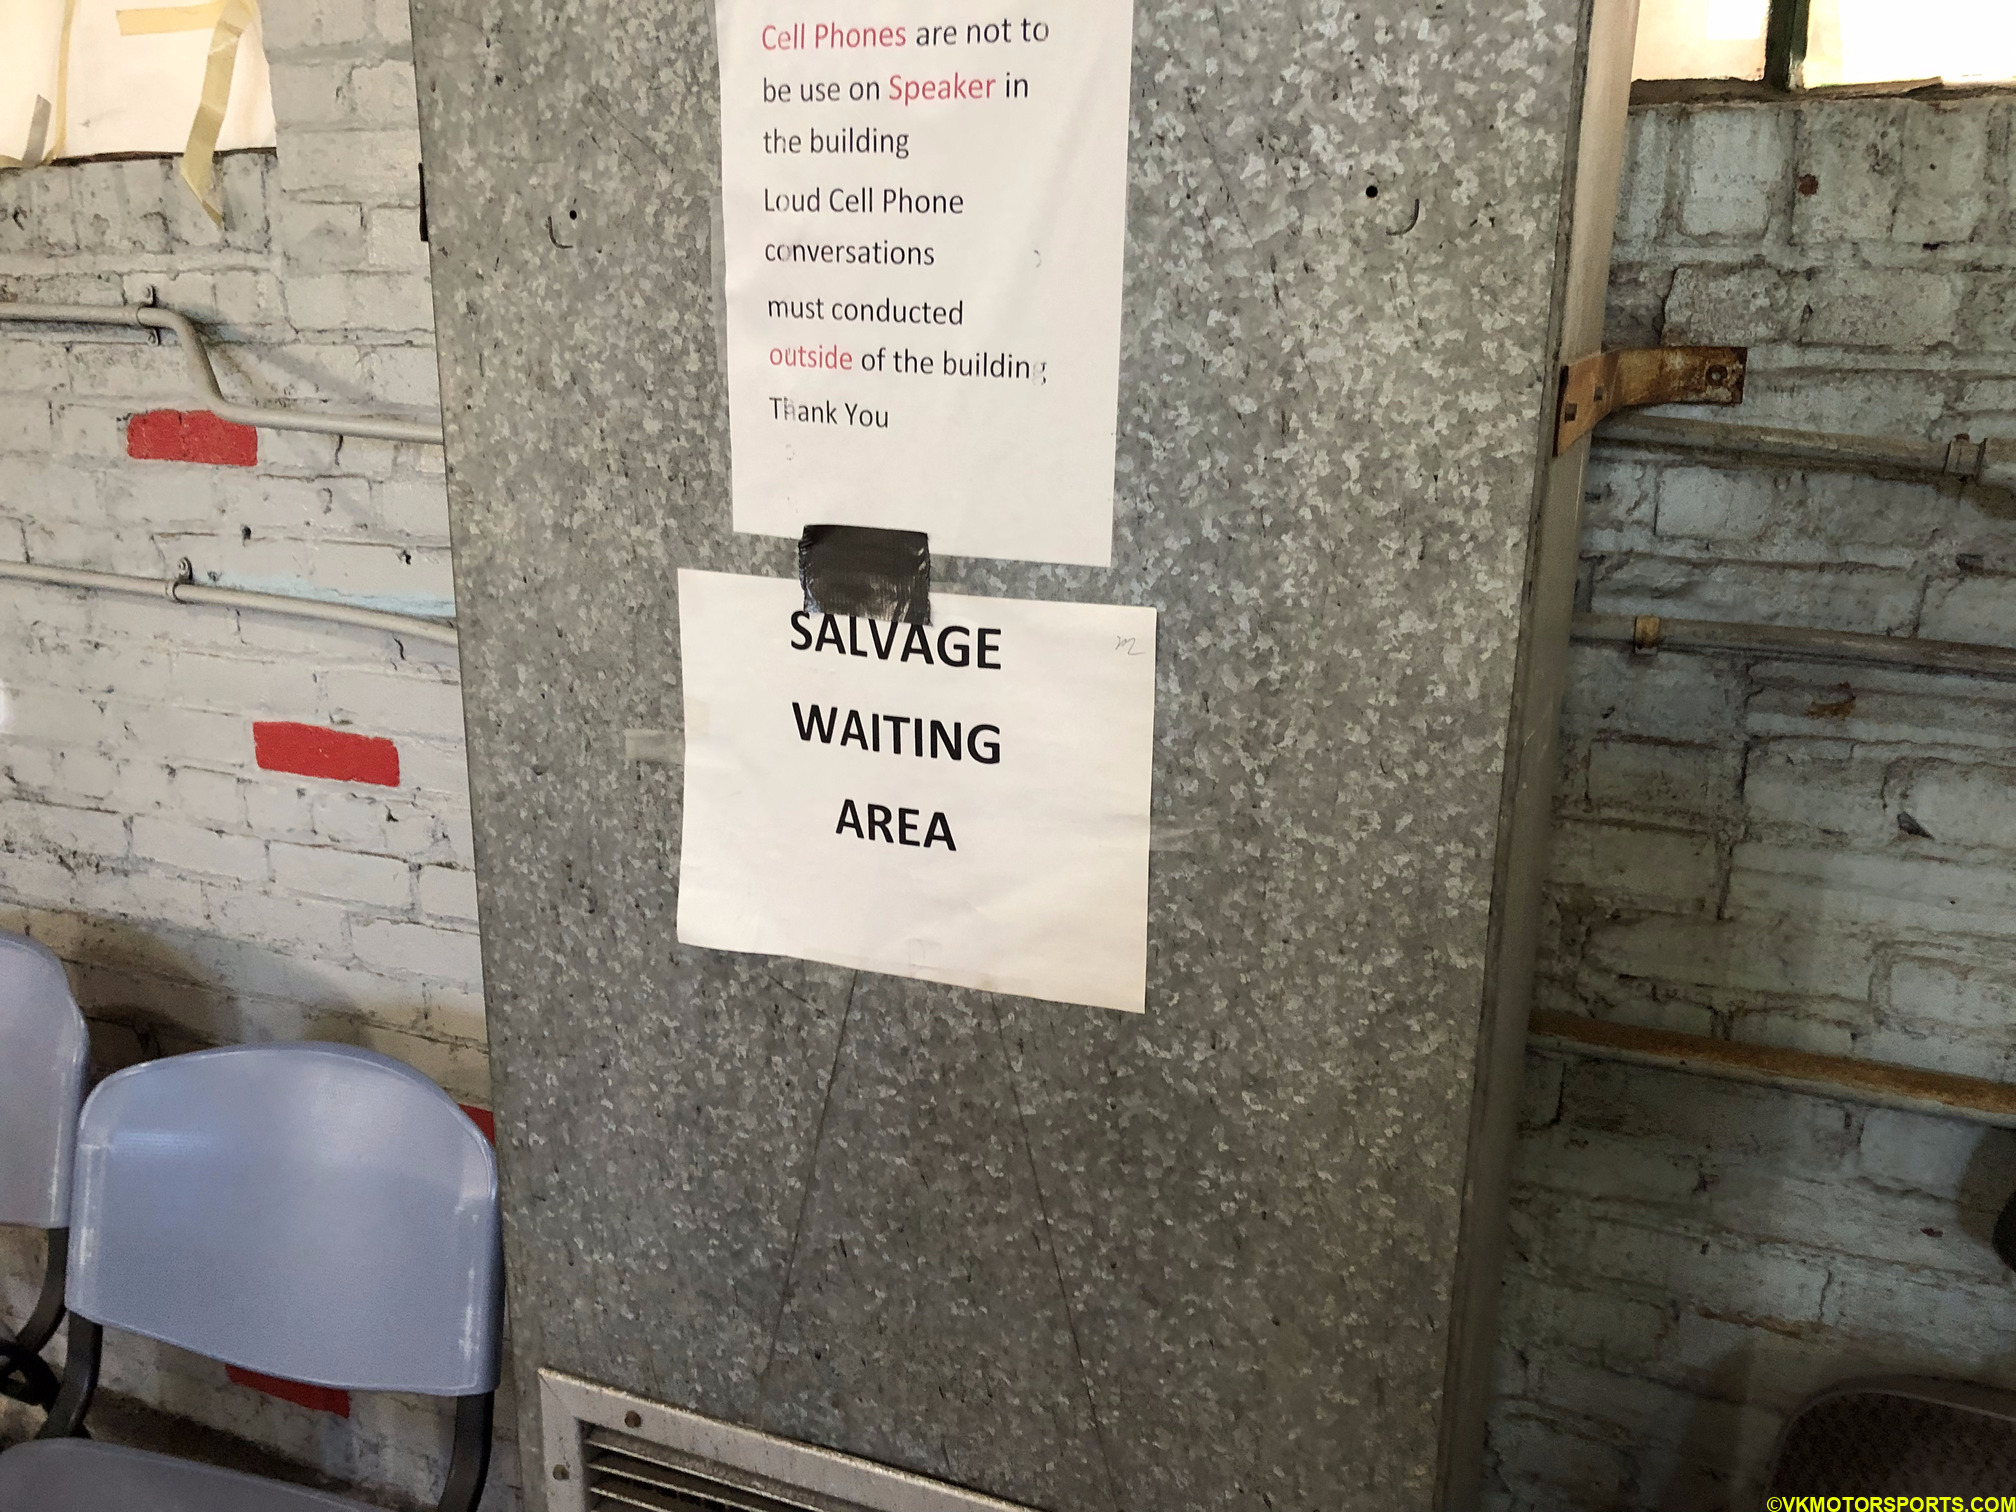 Figure 3. Waiting area notice